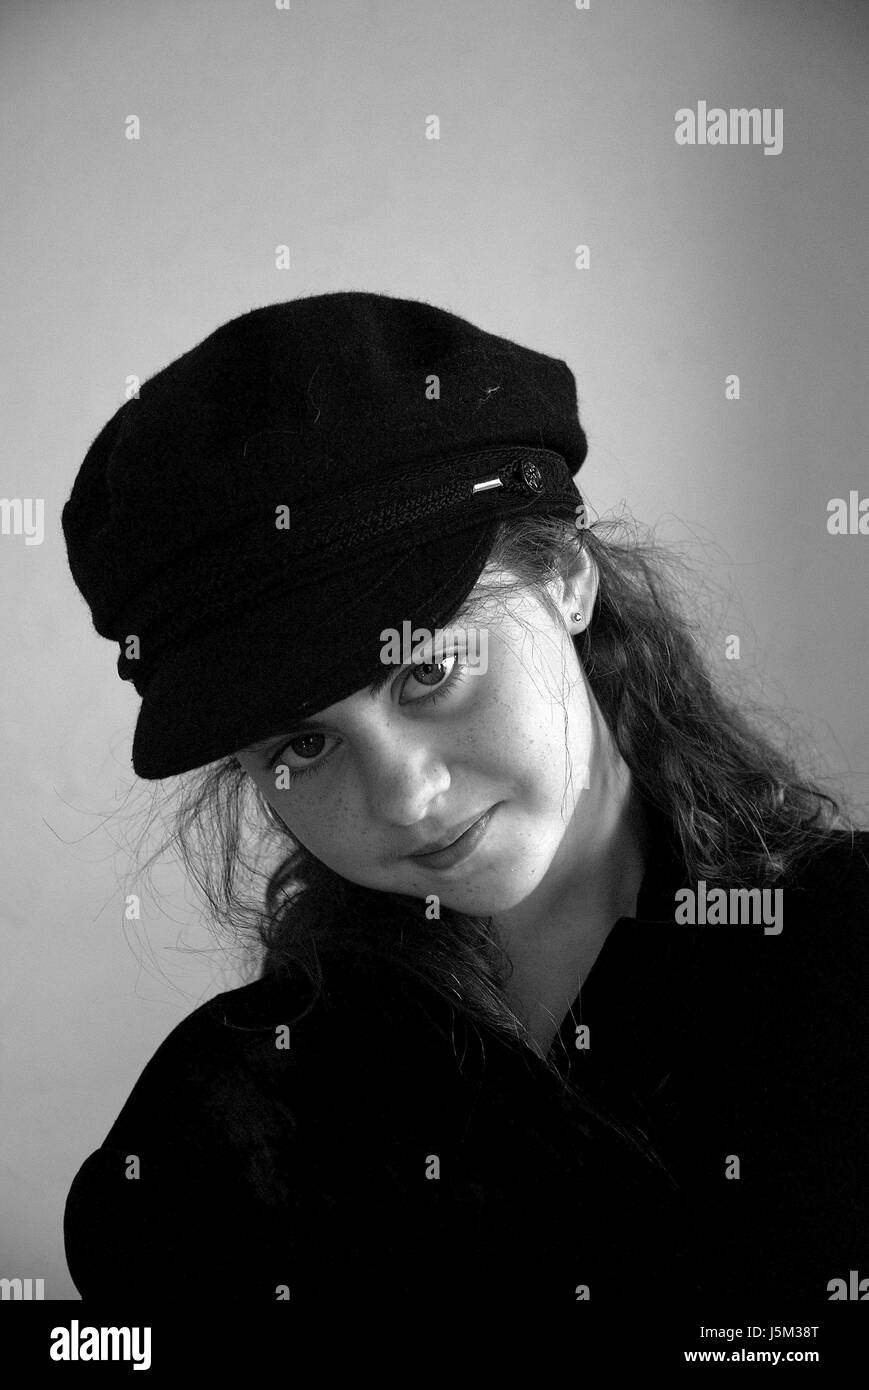 Shine brille sereine lumière lucent sauvages lumineux portrait chapeau noir bw Banque D'Images